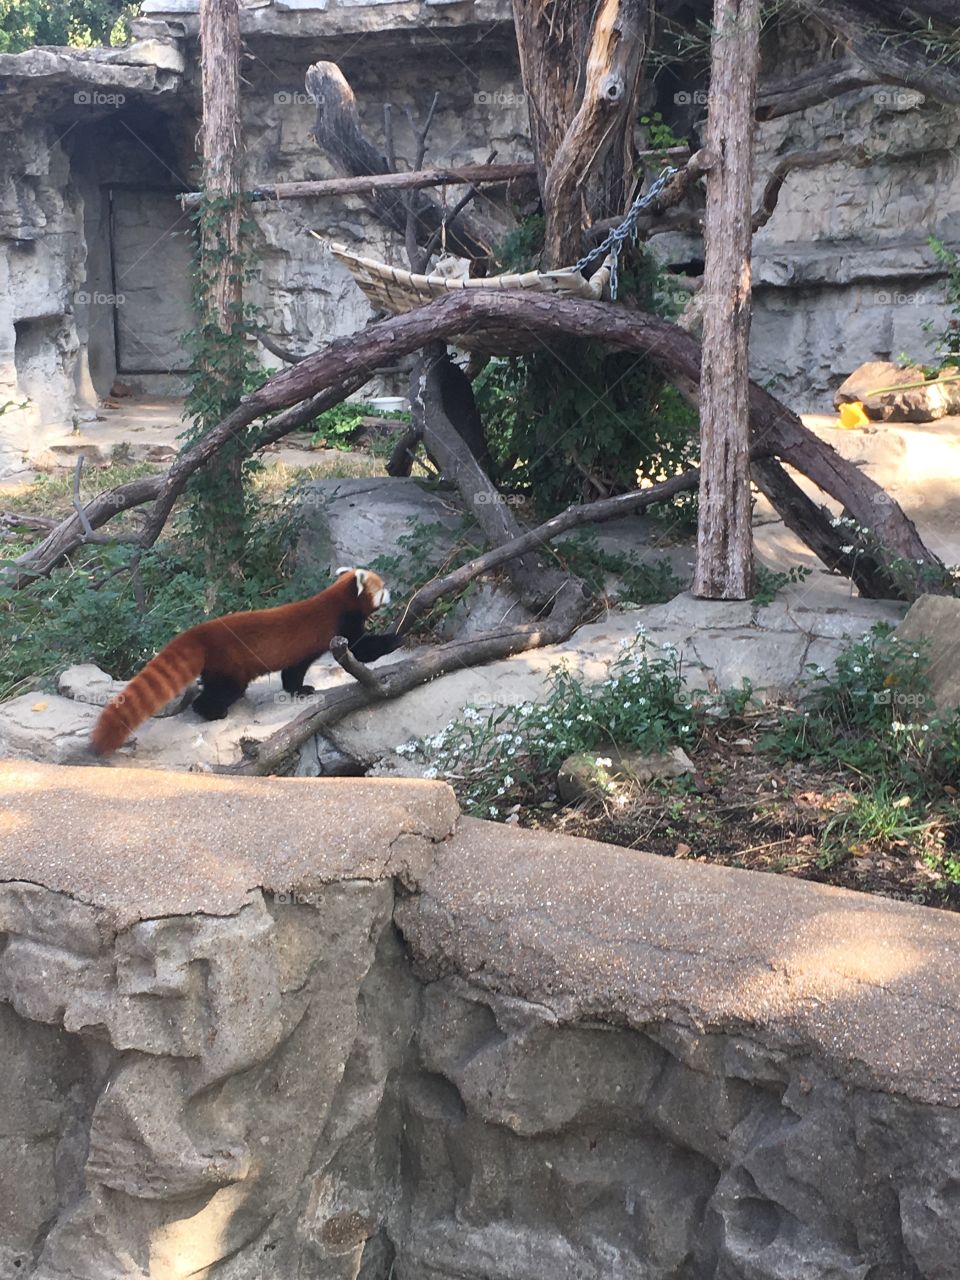 Red panda at Lincoln Park Zoo